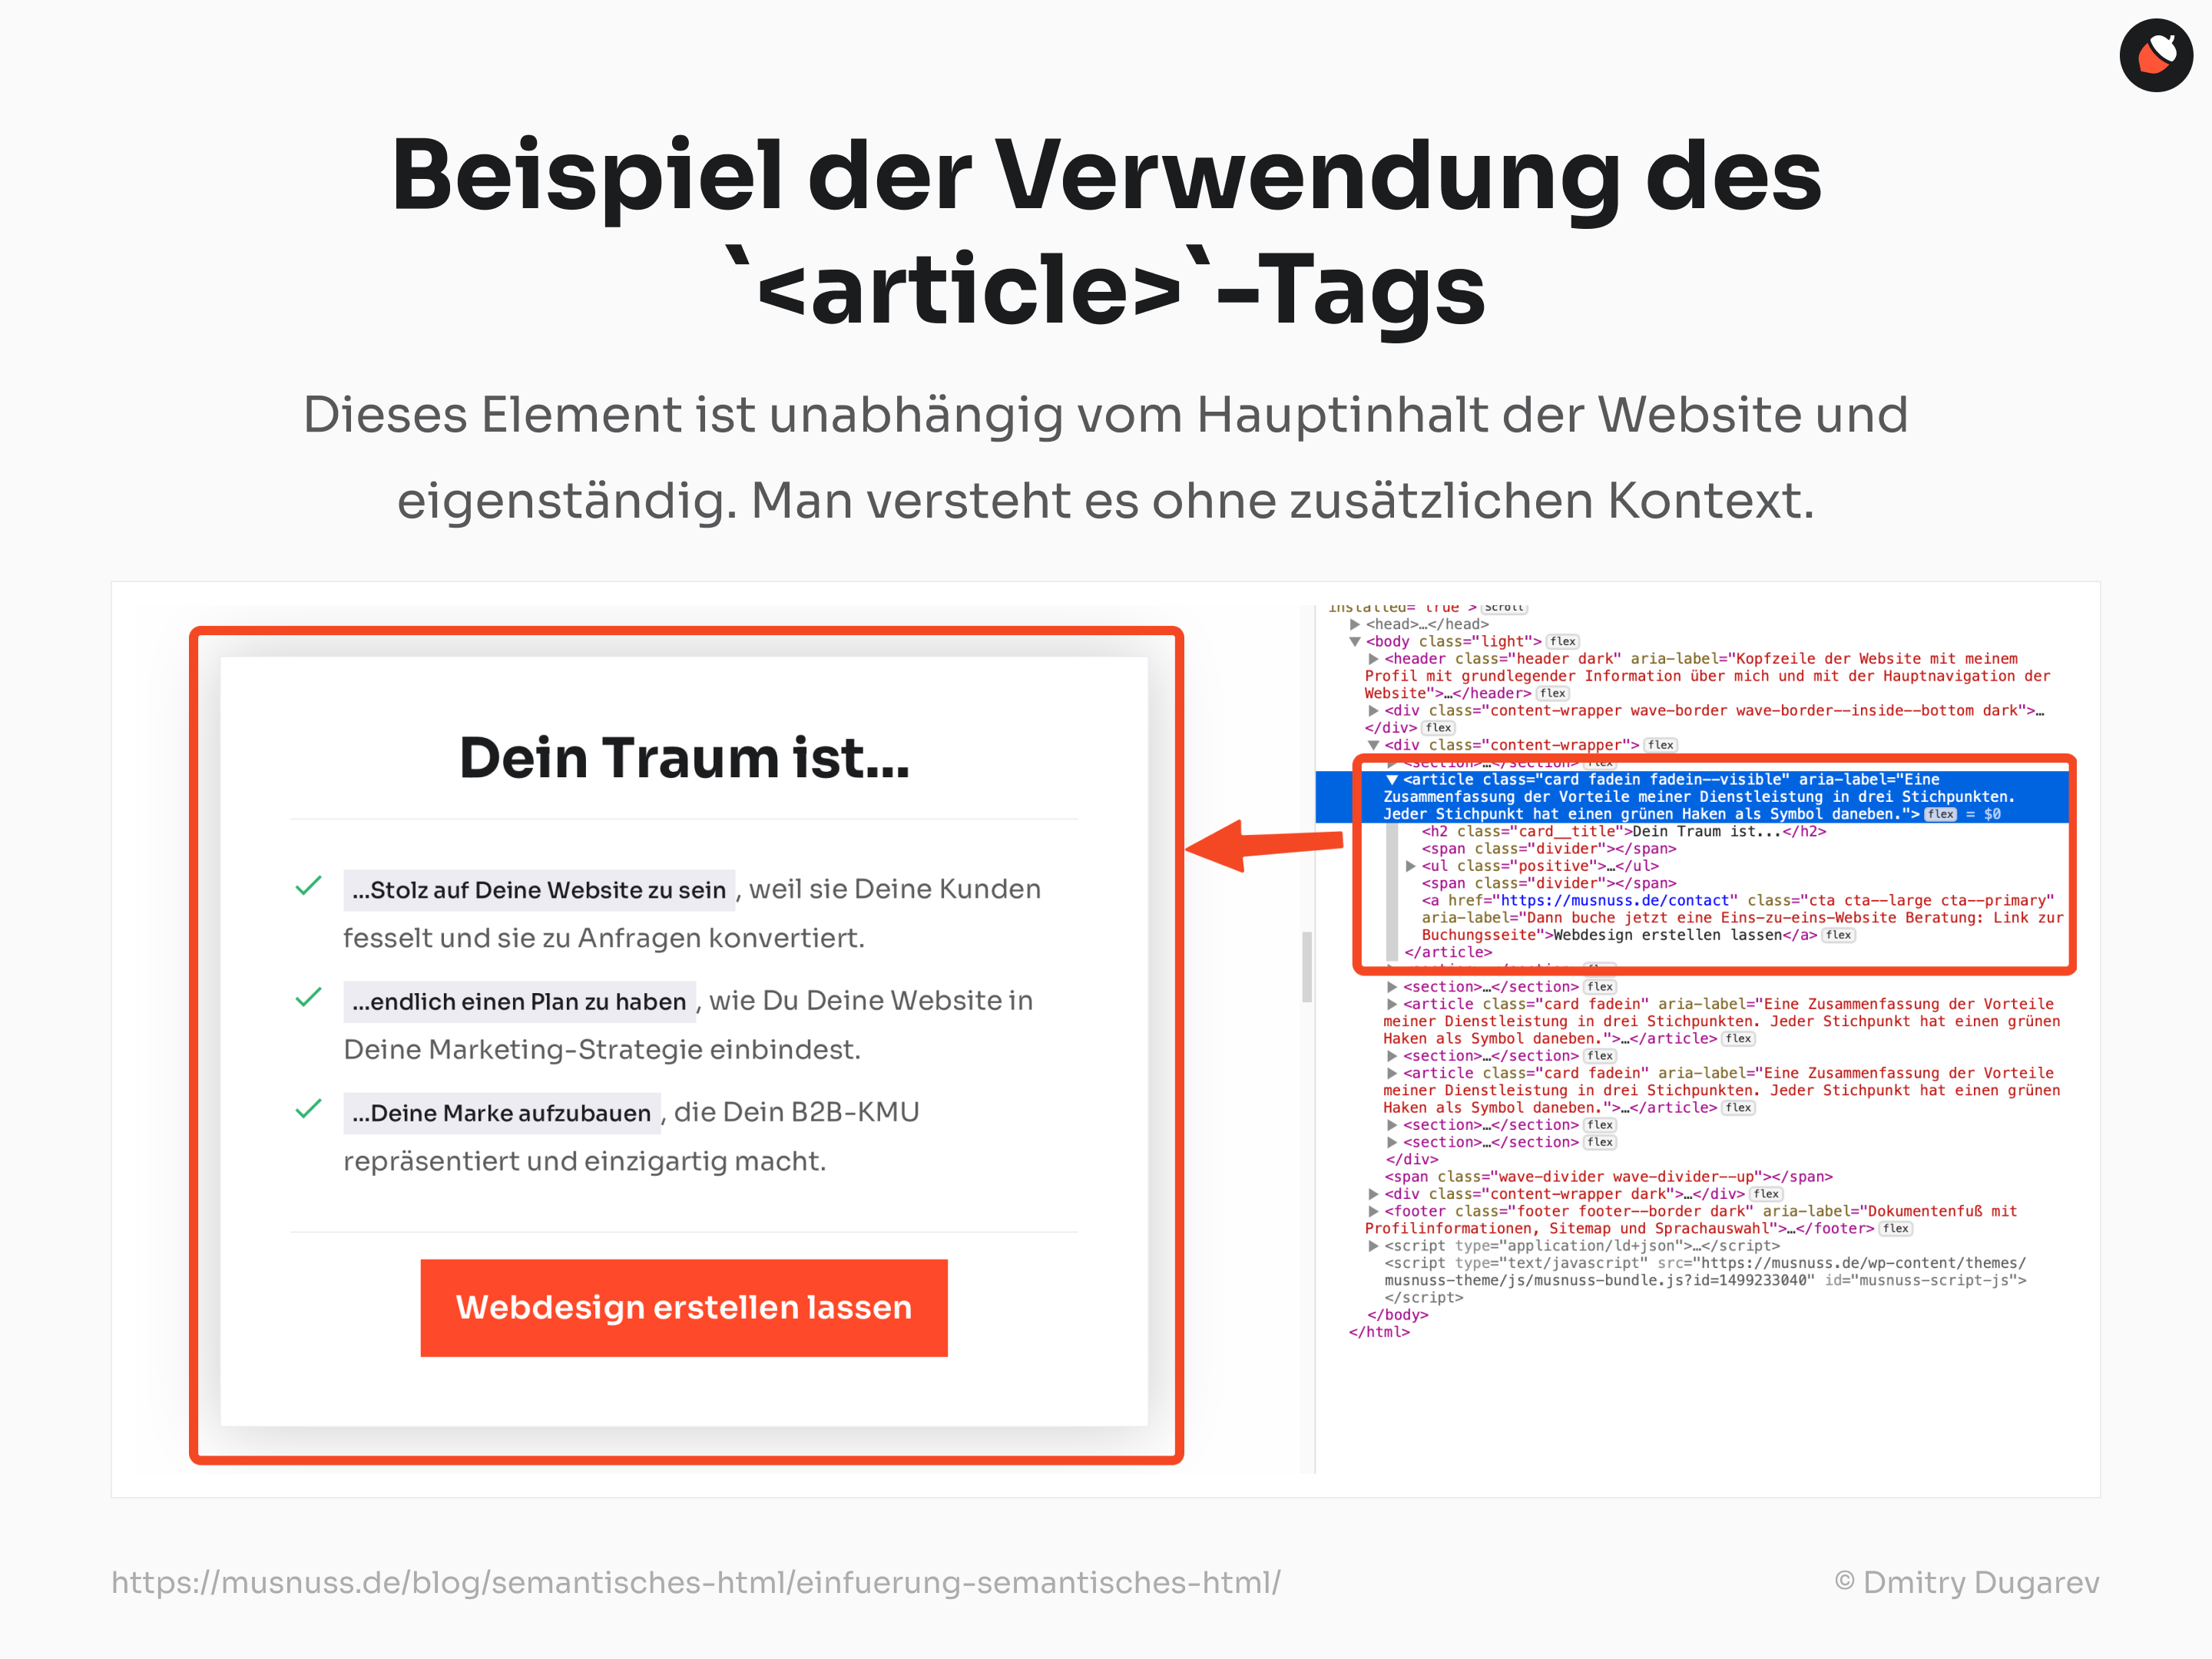 Ein Beispiel für die Verwendung des <article>-Tags in HTML, das ein eigenständiges Inhaltselement zeigt, das unabhängig vom Hauptinhalt der Website ist und ohne zusätzlichen Kontext verstanden werden kann.